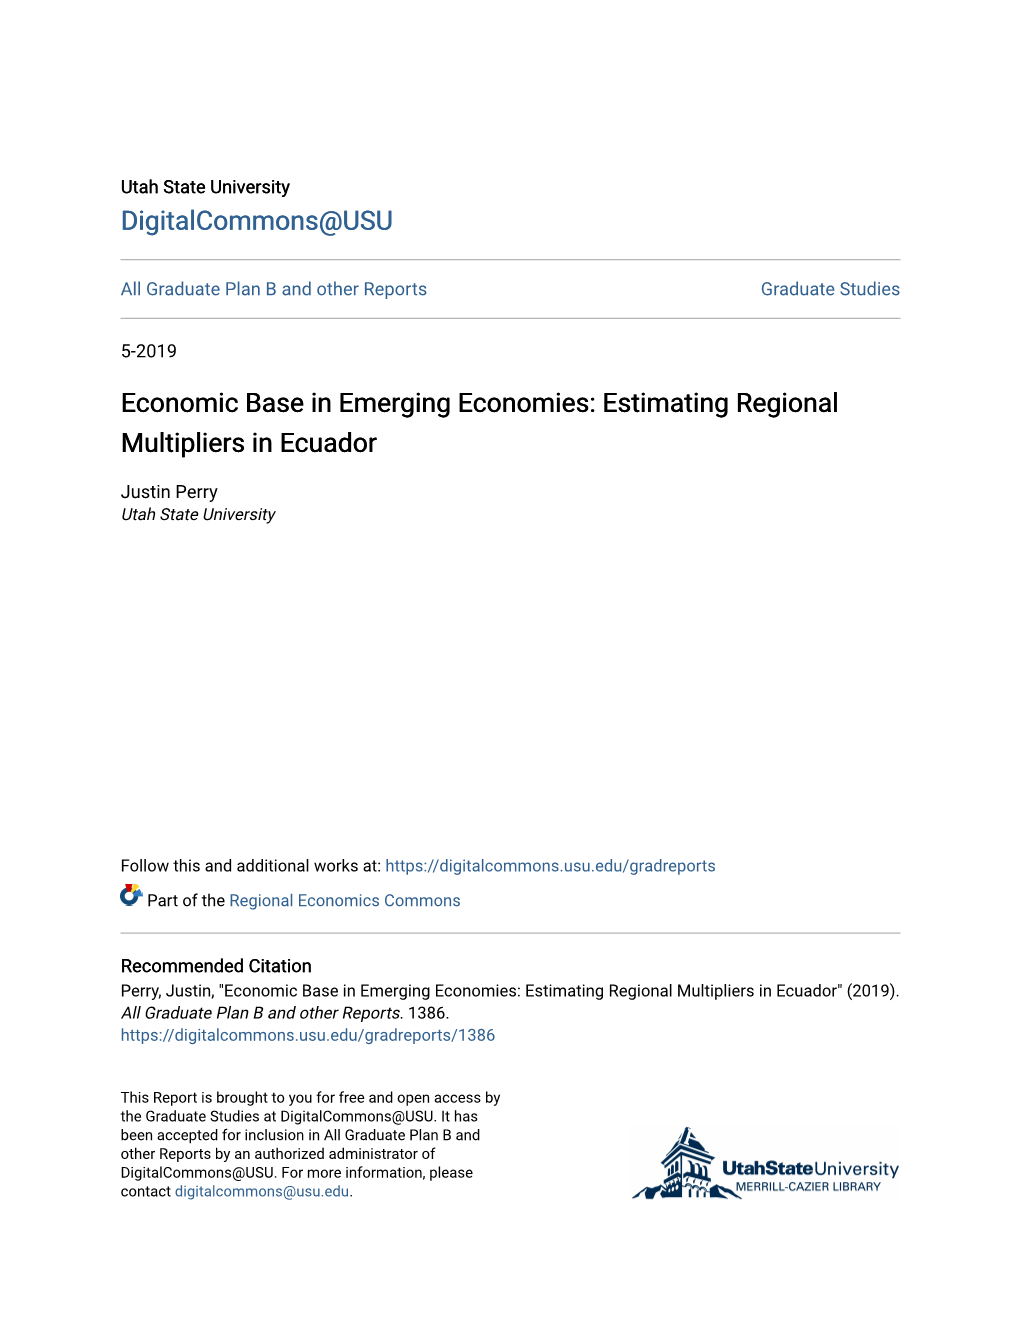 Economic Base in Emerging Economies: Estimating Regional Multipliers in Ecuador